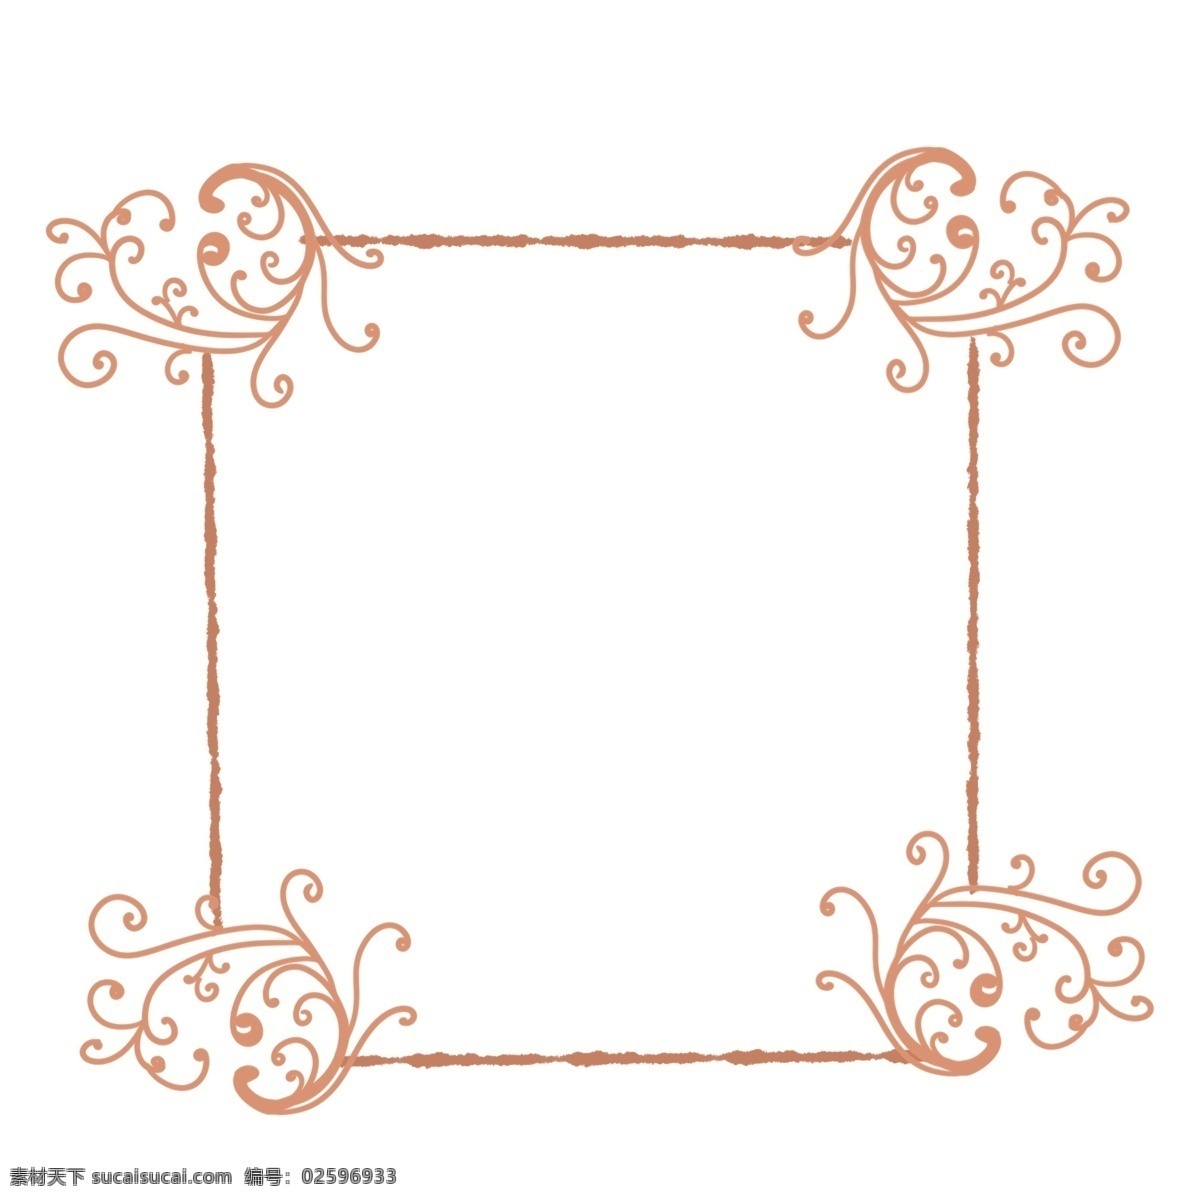 小花 边框 装饰 插画 橘色的边框 小花边框 植物边框 漂亮的边框 创意边框 立体边框 卡通边框